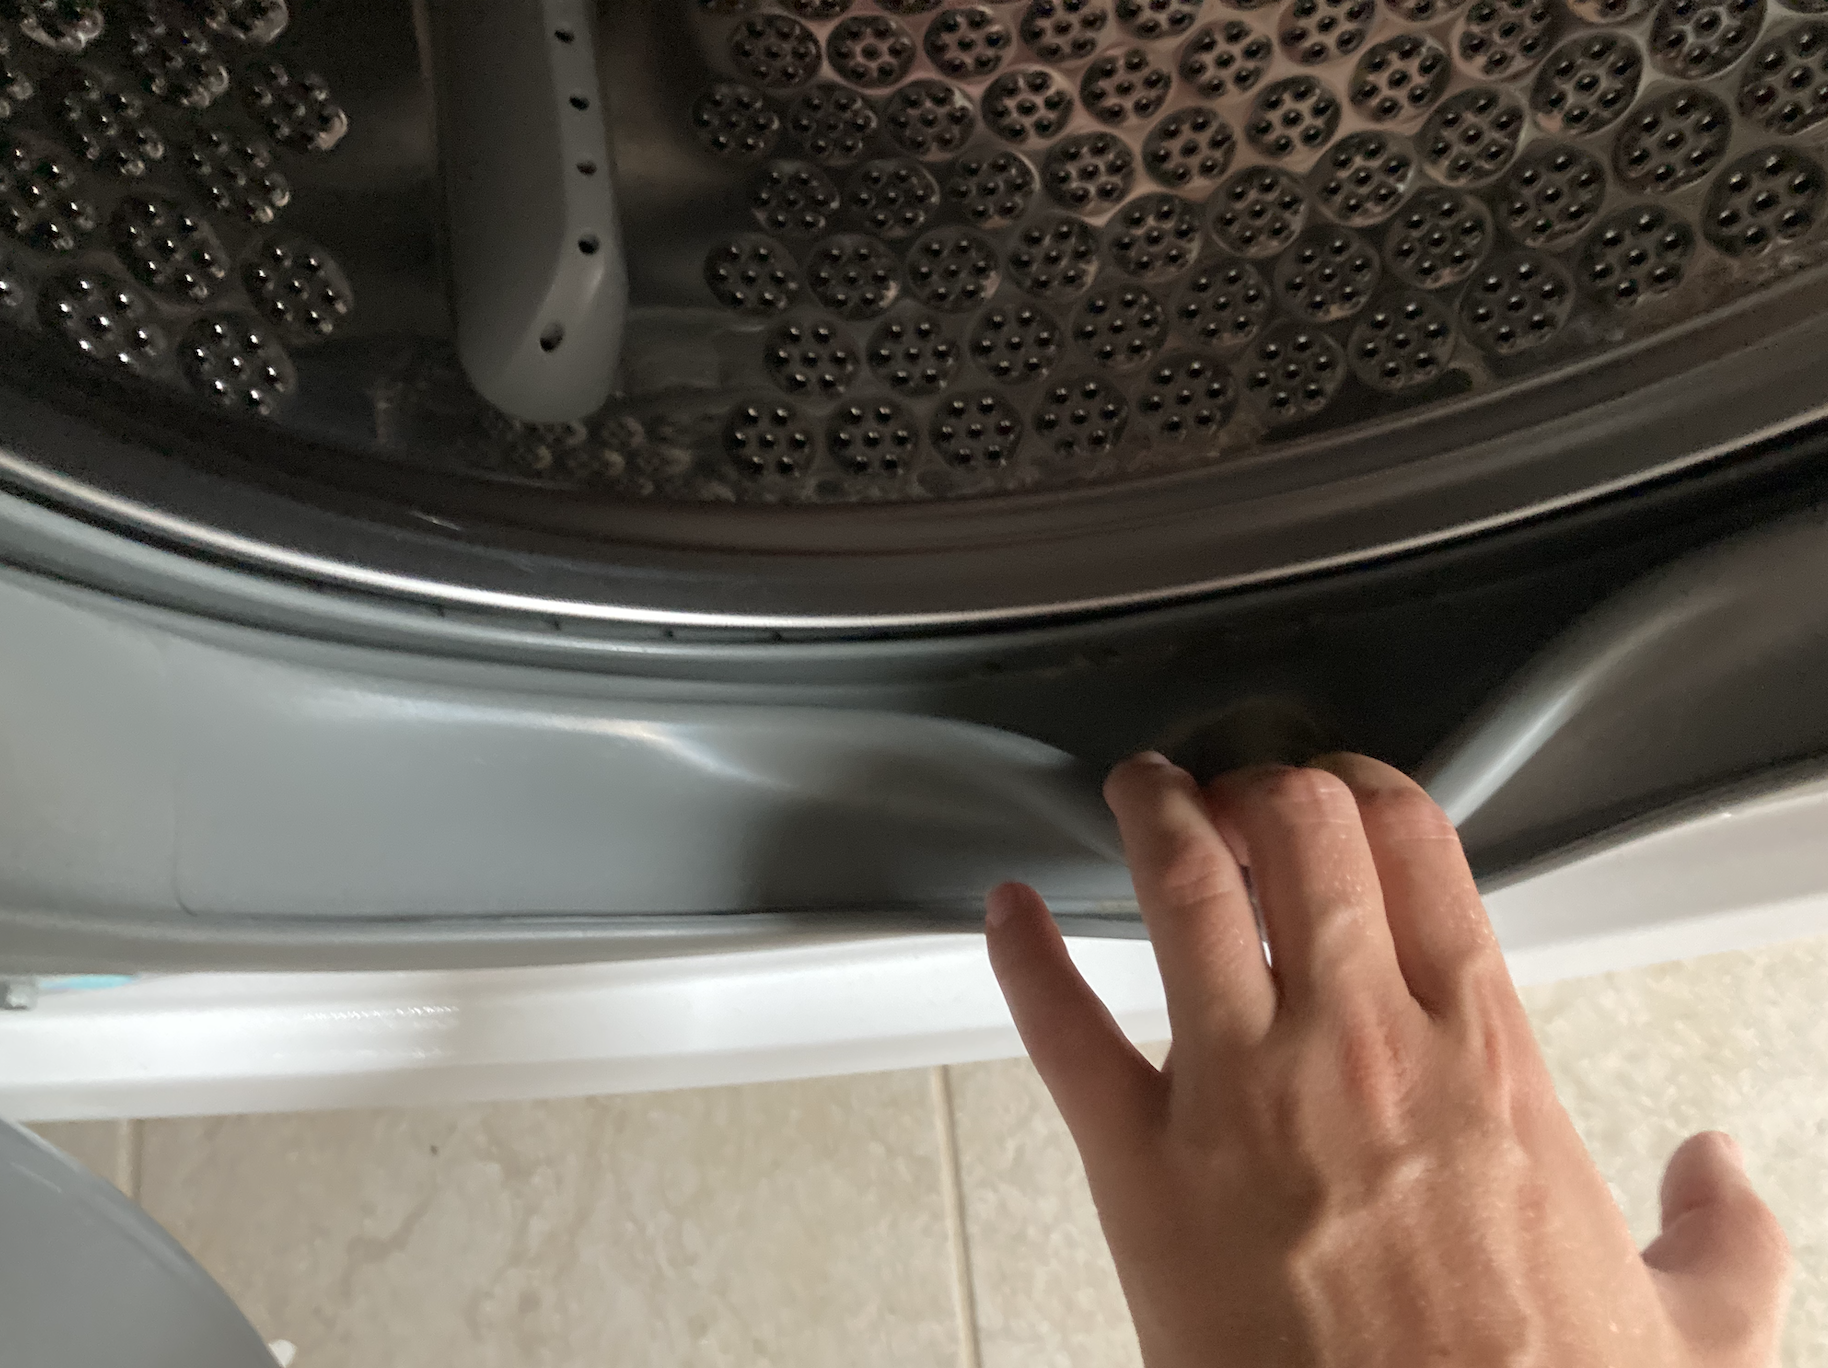 Wystarczy, że zrobisz jedną rzecz, a cały brud zostanie wypłukany z pralki: Pralka jest idealnie czysta, pachnąca i JAK NOWA!